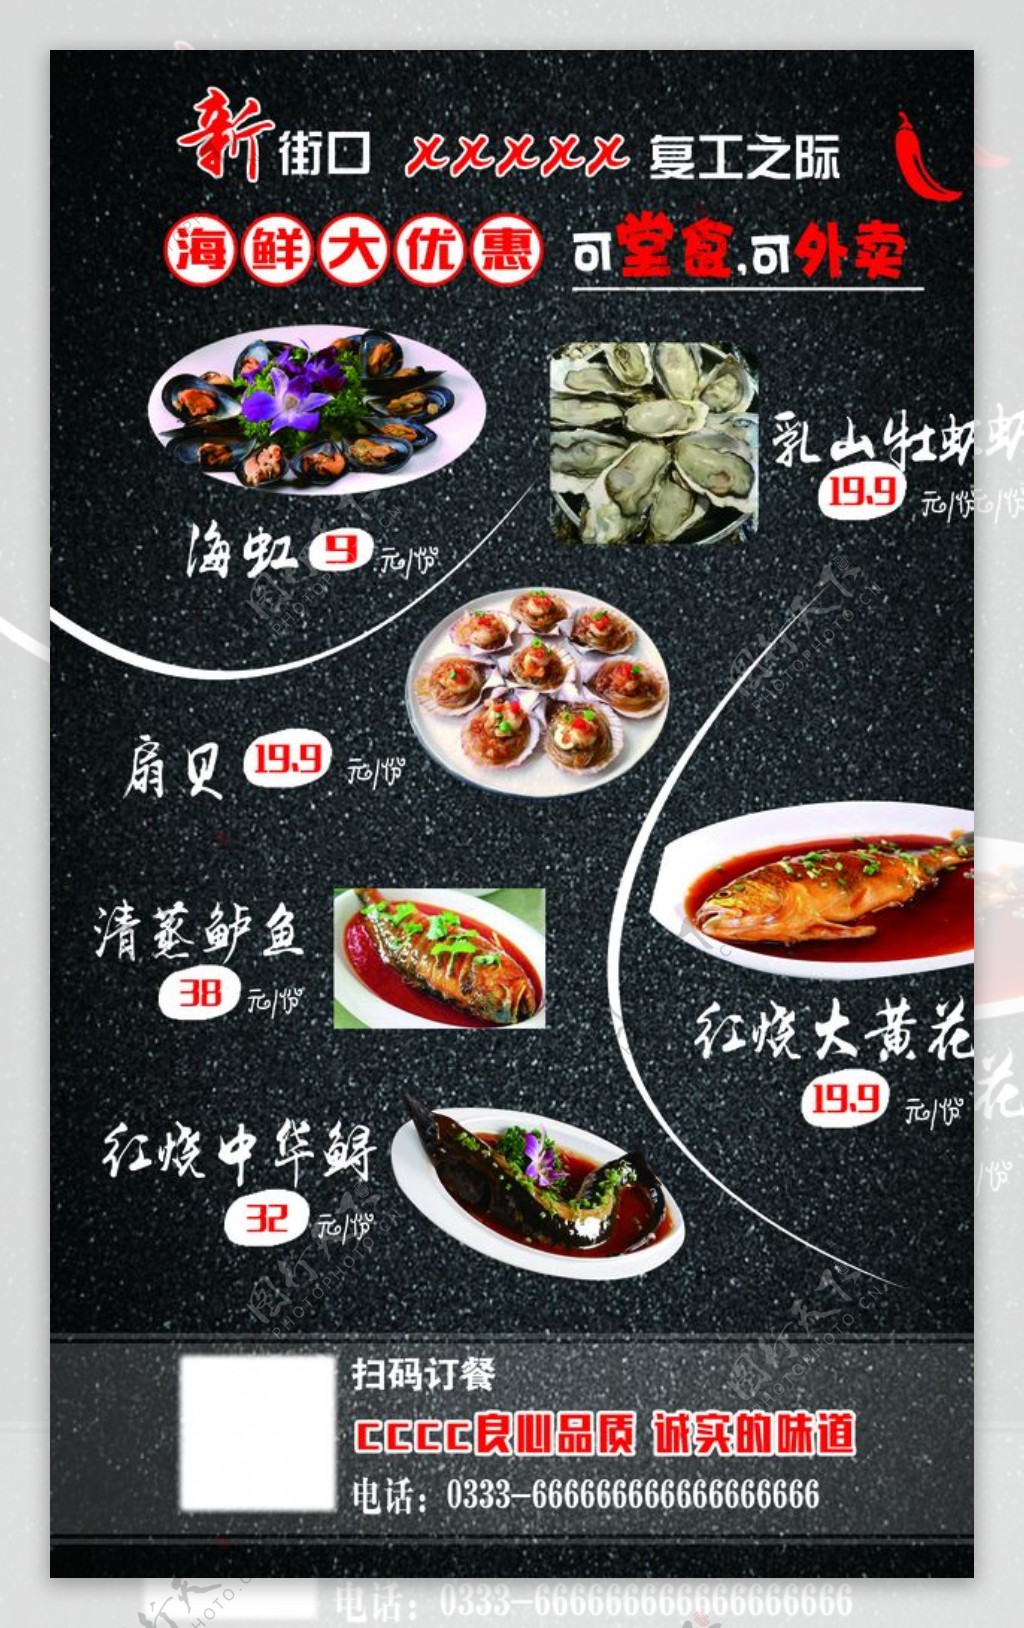 饭店海鲜活动菜谱